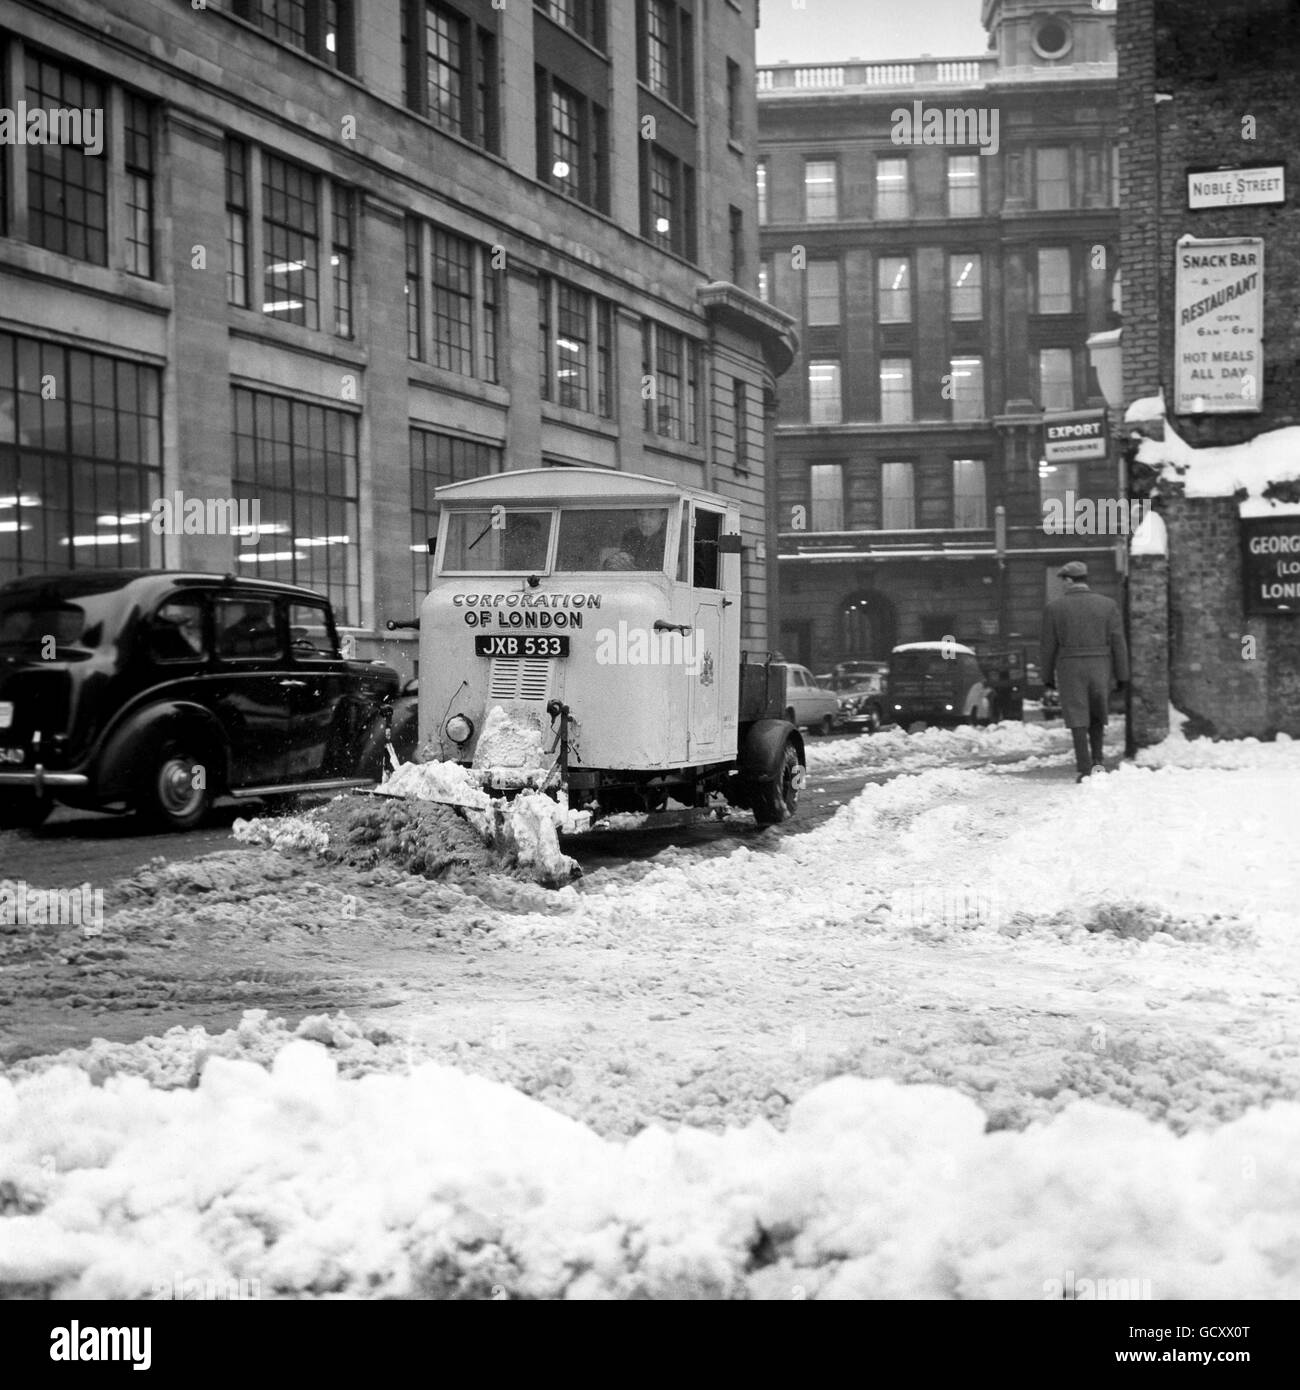 Weather - Winter - Snow Scenes - London Stock Photo